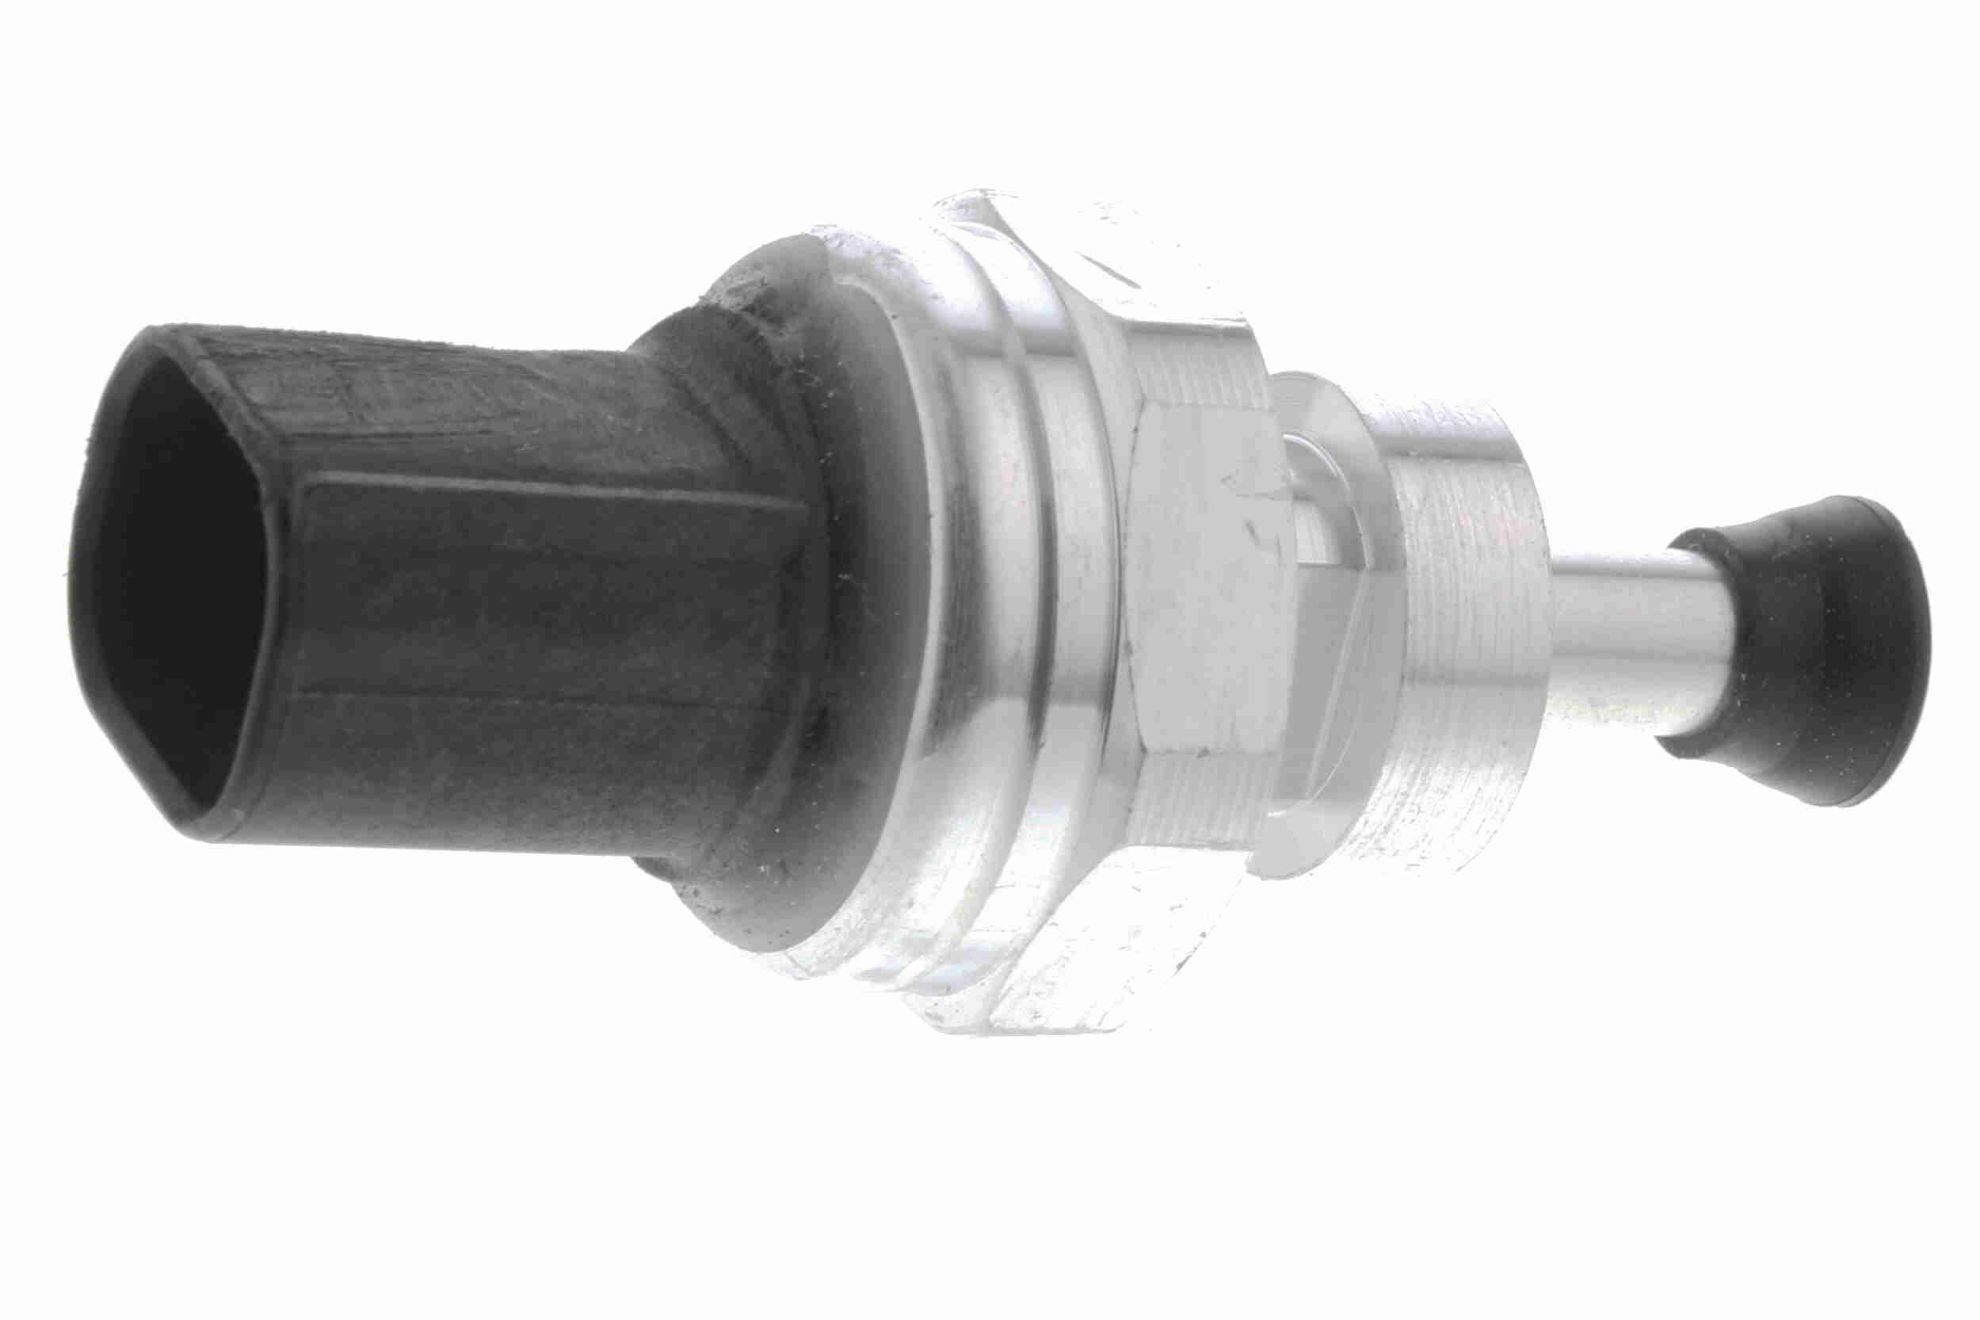 Obrázok Snímač tlaku výfukových plynov VEMO Q+, original equipment manufacturer quality V46720199